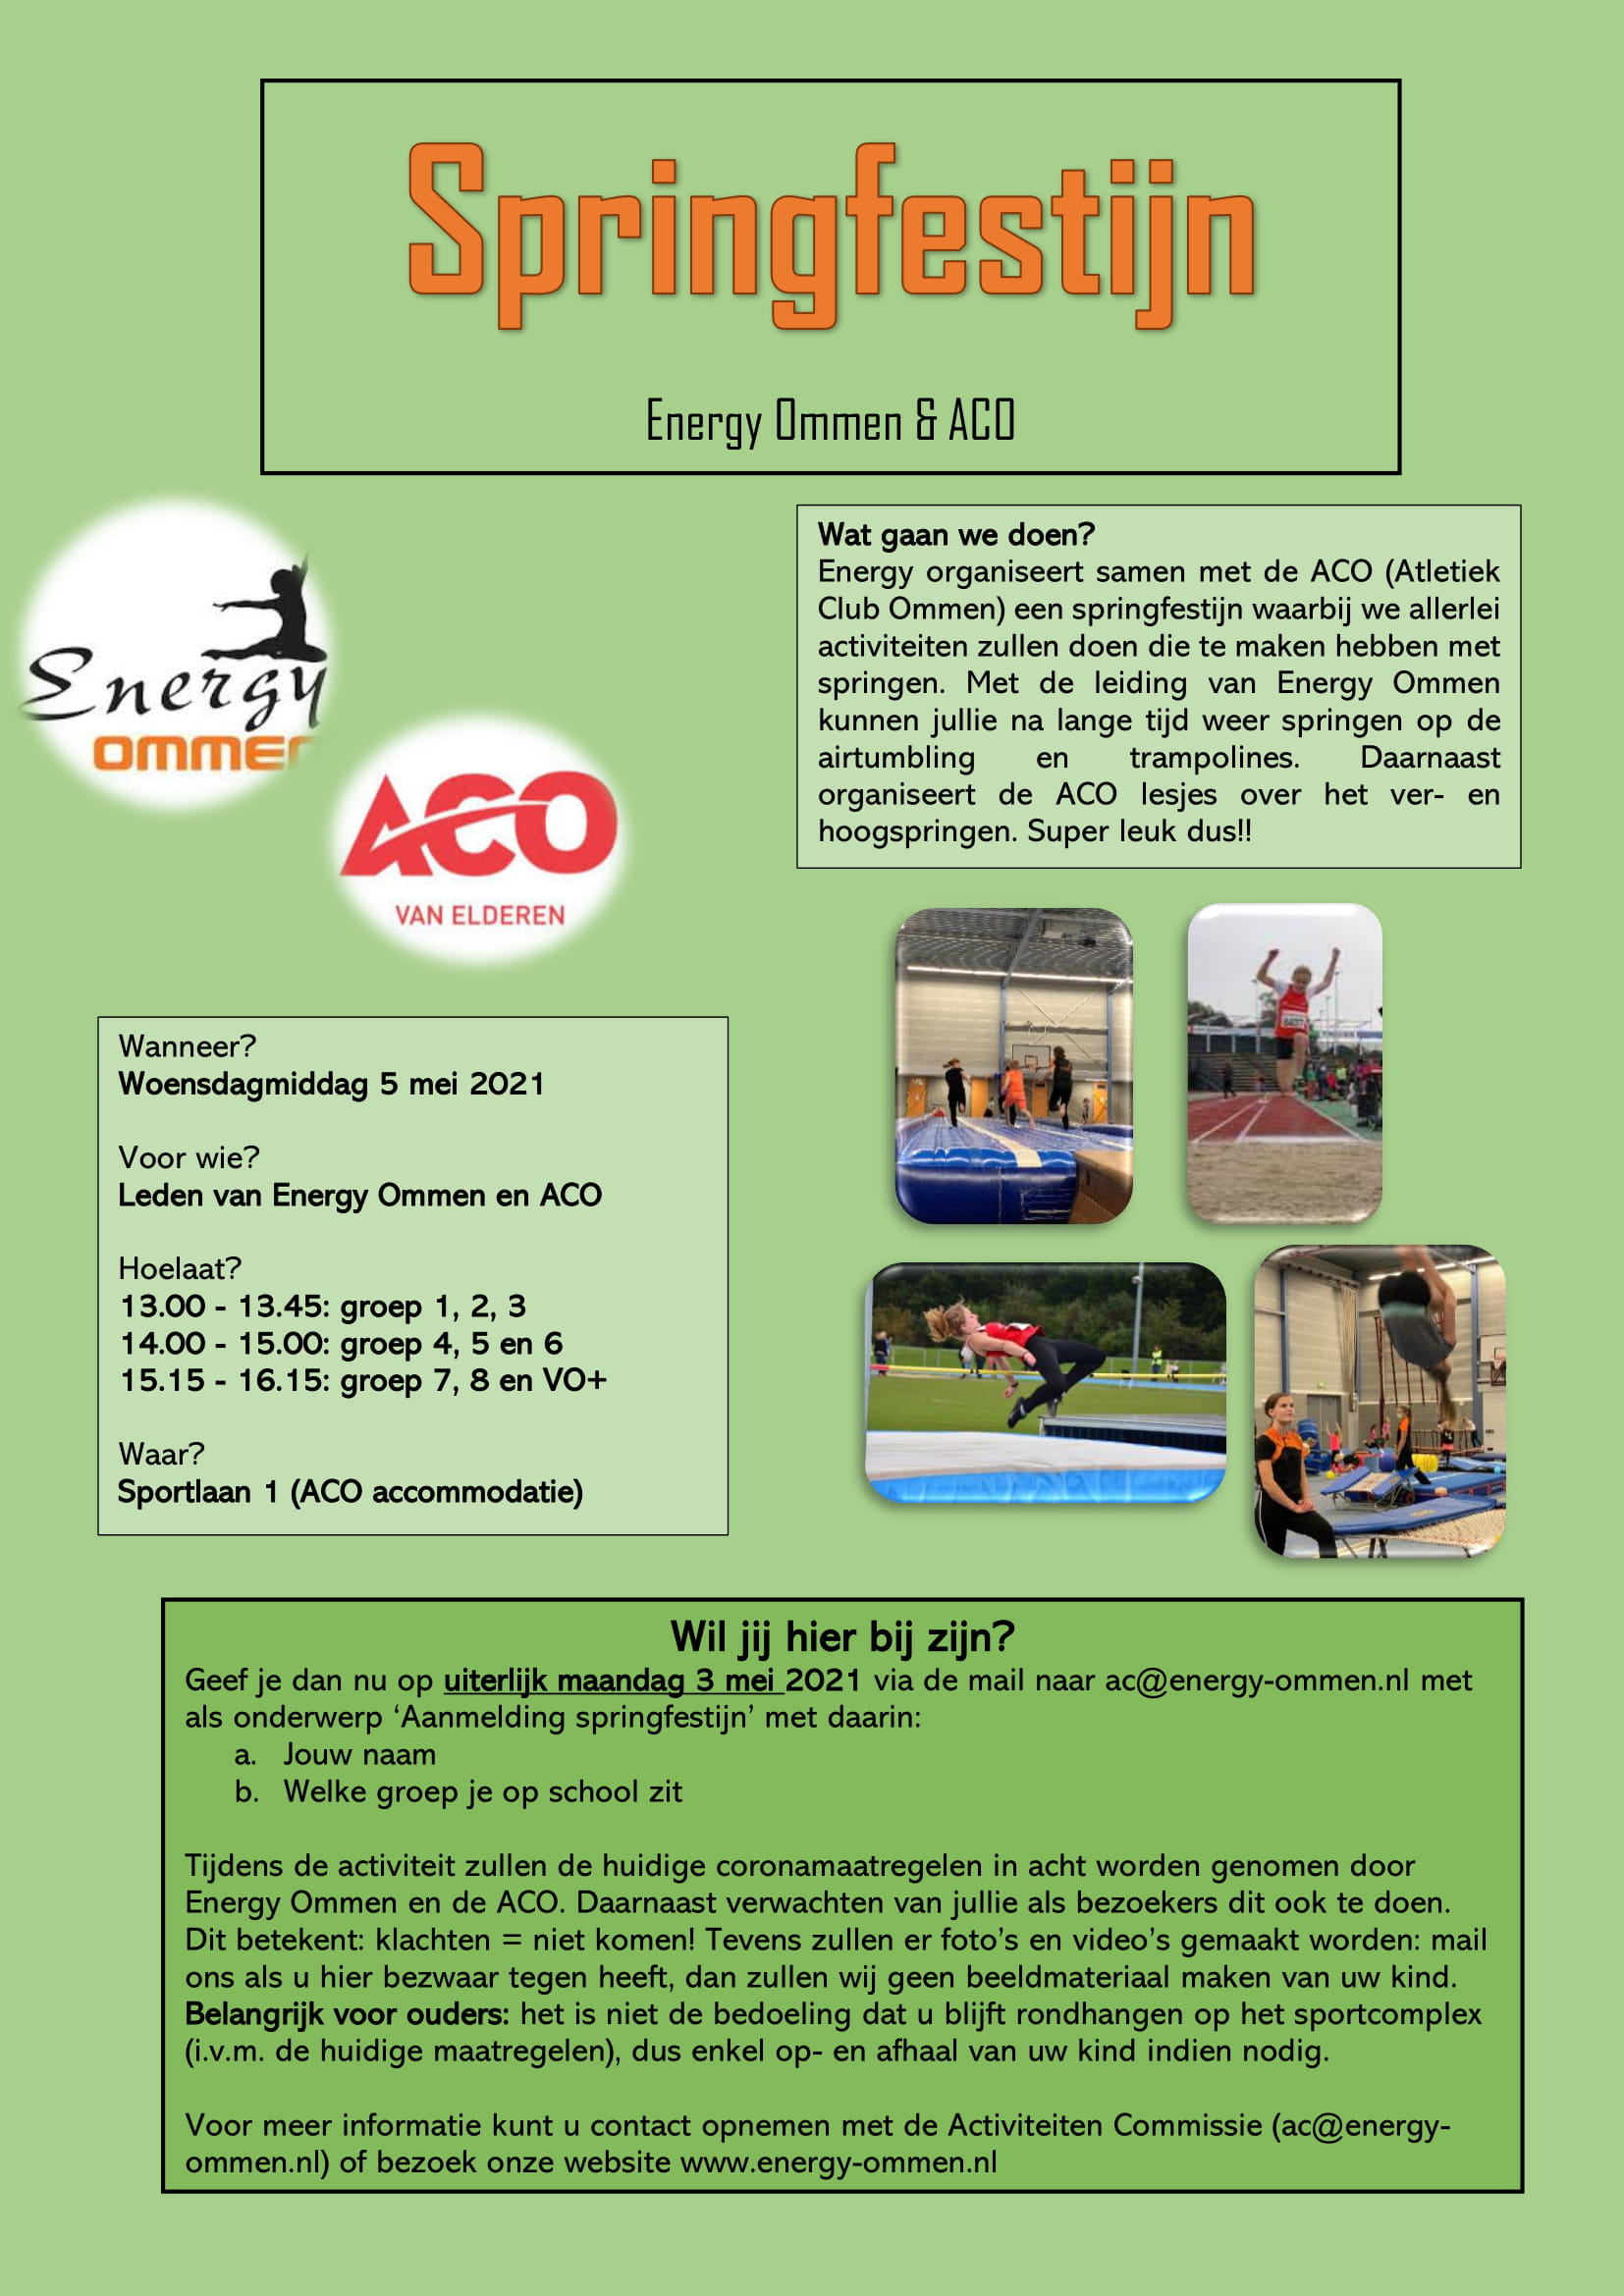 Springfestijn: Energy & ACO